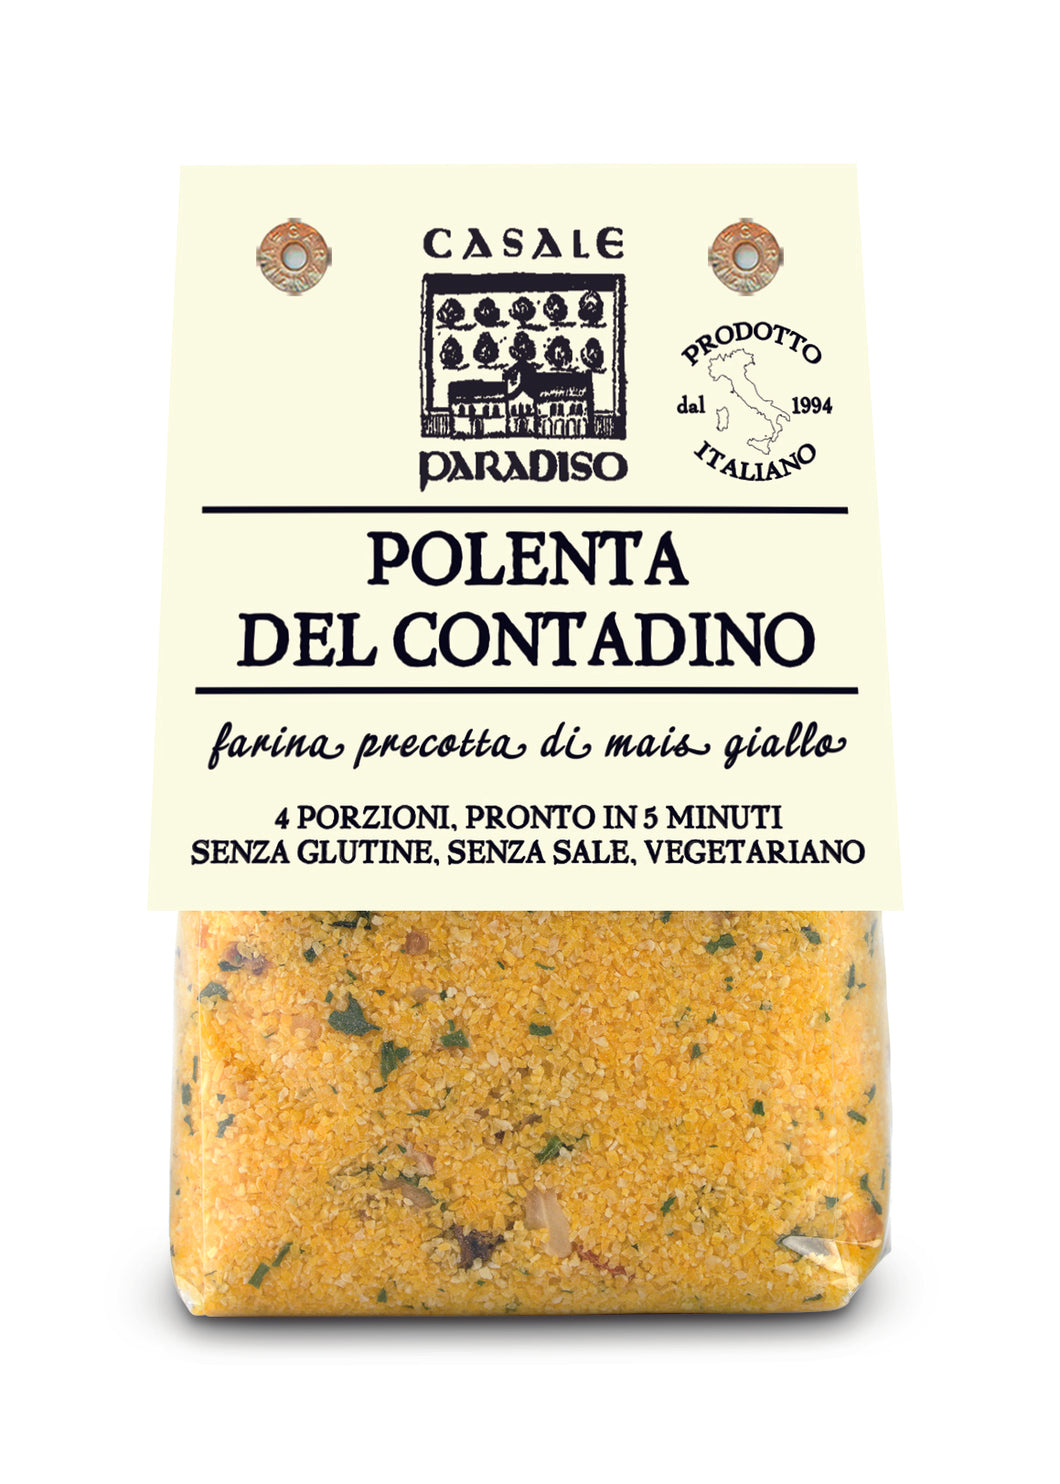 Casale Paradiso Countryman's Polenta - 10.58 oz